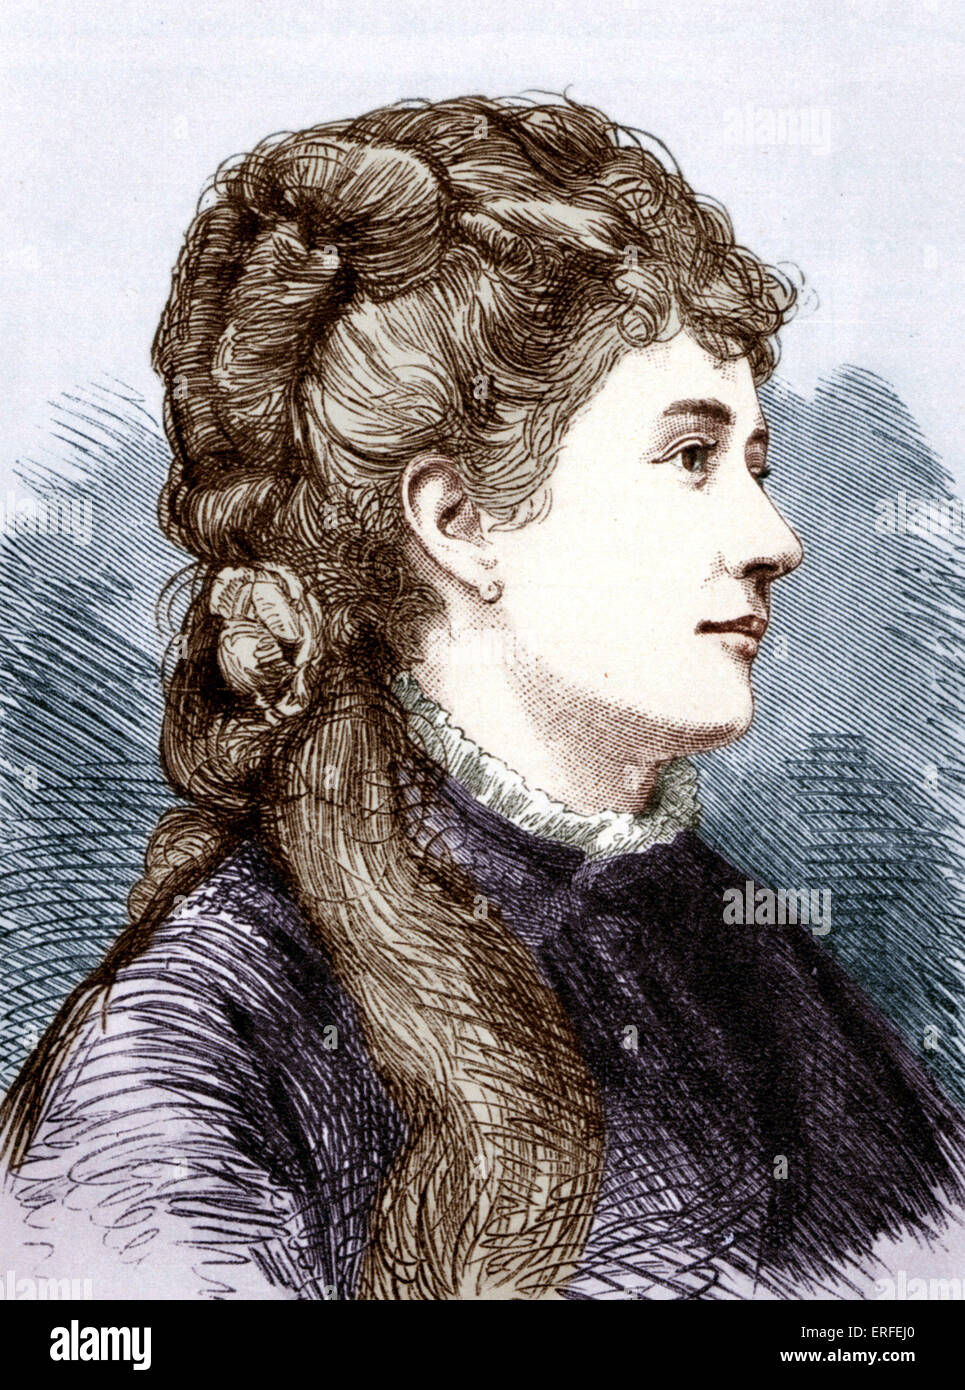 MARIA WALDMANN, bevorzugte eines Verdi Sänger. Amneris sang im ersten italienischen Aida.  Österreichischen mezzo - Sopran (1842-1920). Stockfoto